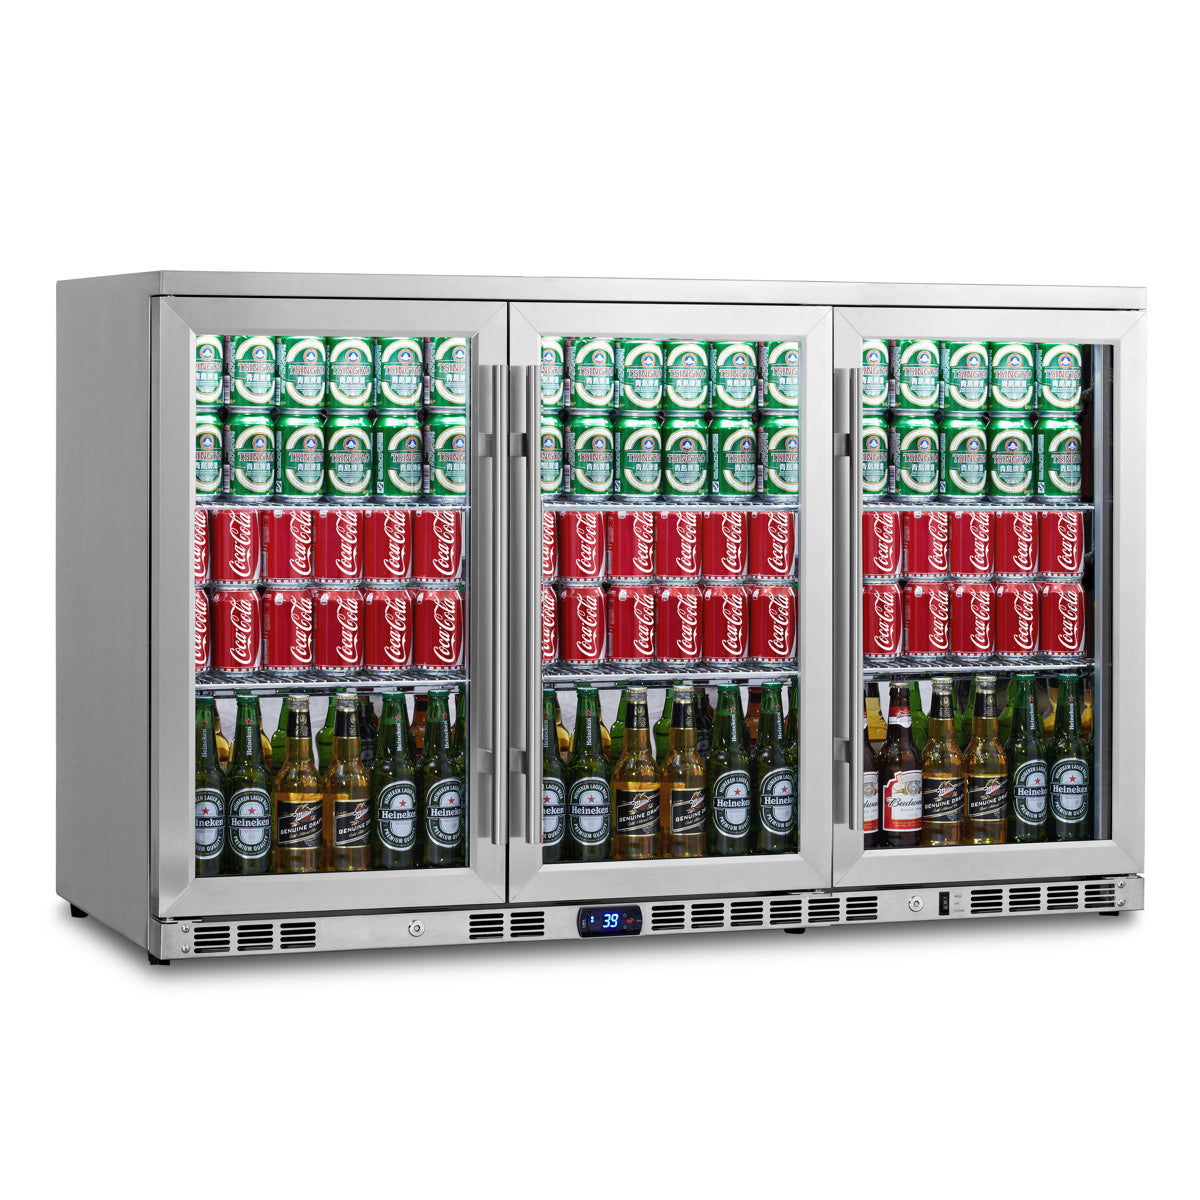 https://kingsbottle.com/cdn/shop/products/53_inch_heating_glass_triple_door_large_beverage_refrigerator_KBU328M.jpg?v=1578214774